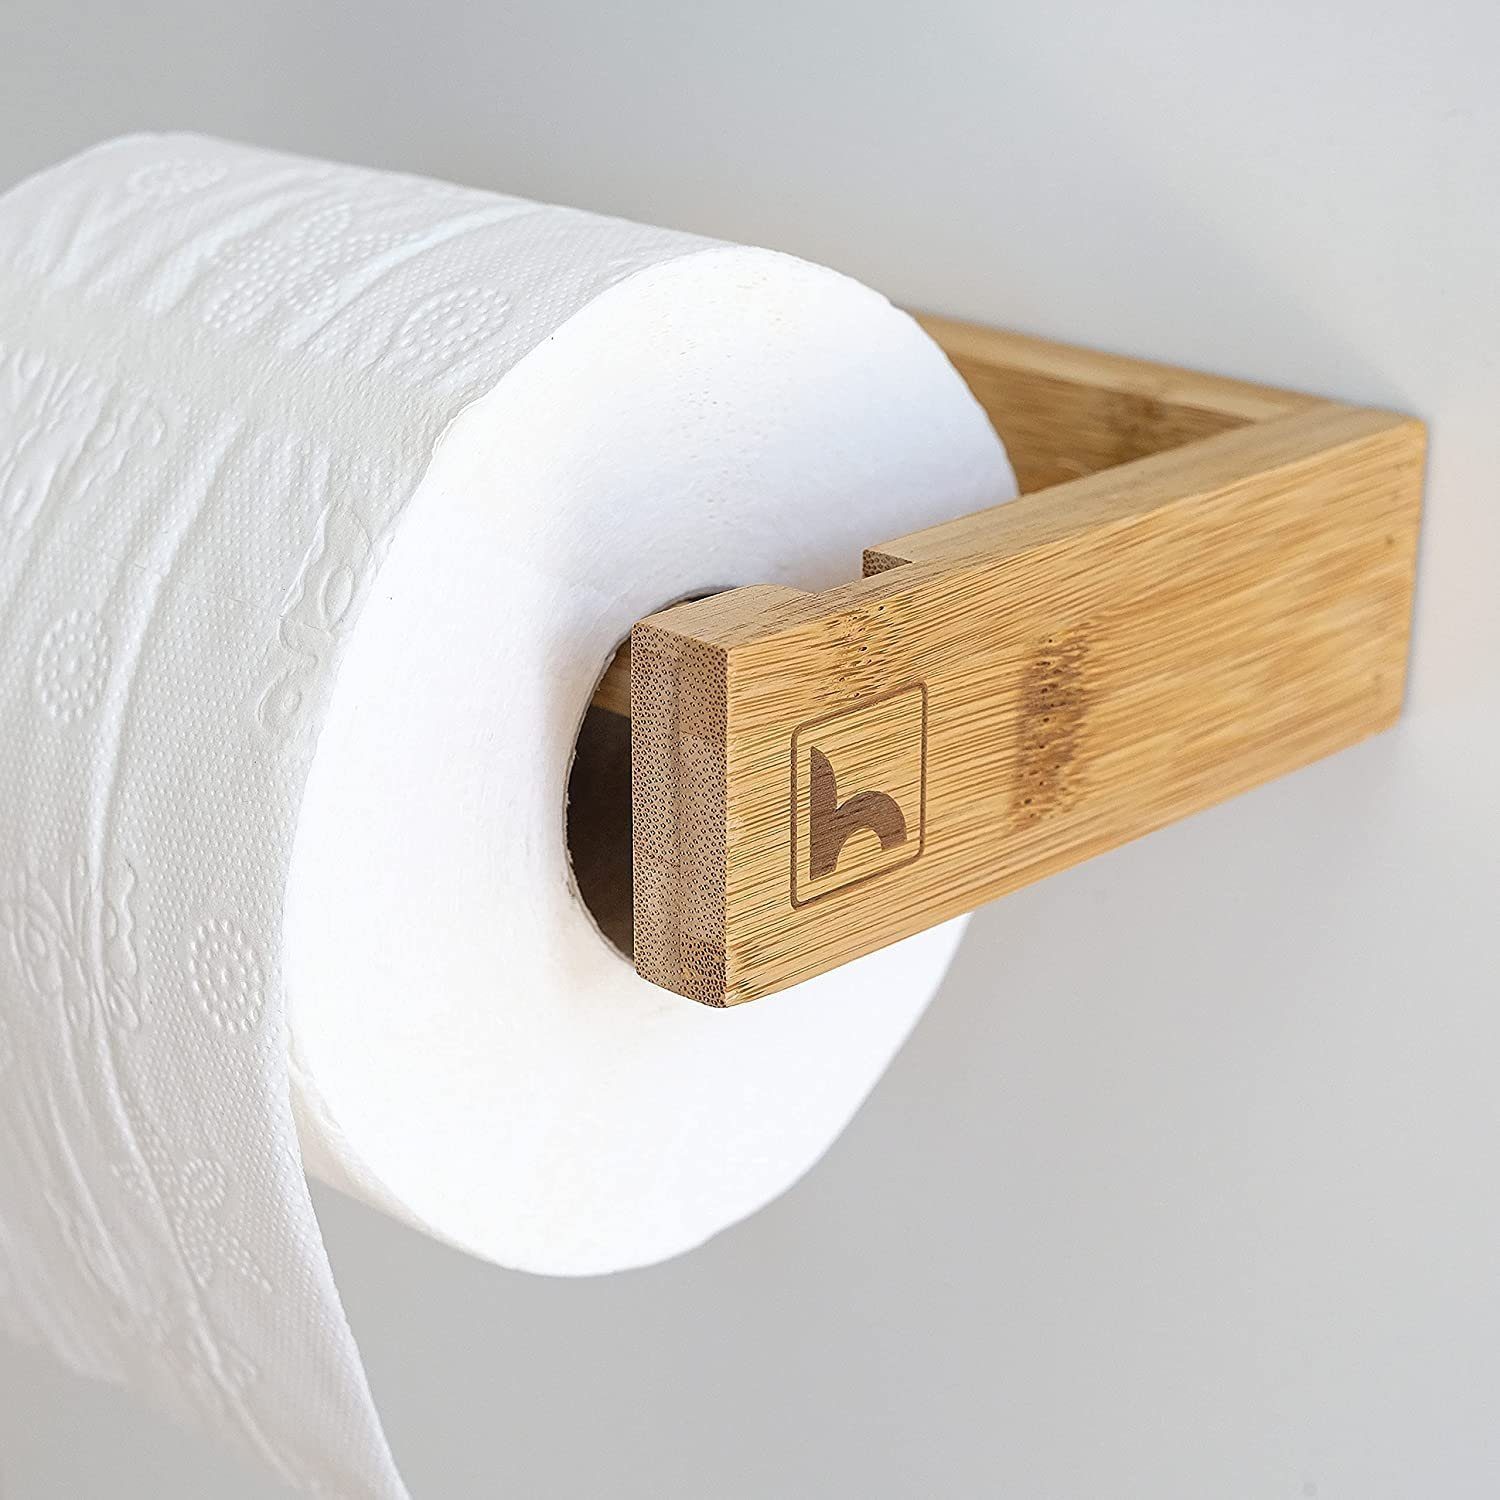 HENNEZ Toilettenpapierhalter, ohne Bohren, Klorollenhalter Holz Bambus, WC  Rollenhalter Toilettenpapier Halter -Toilettenrollenhalter Holz - Bad  Zubehör Bambus online kaufen | OTTO